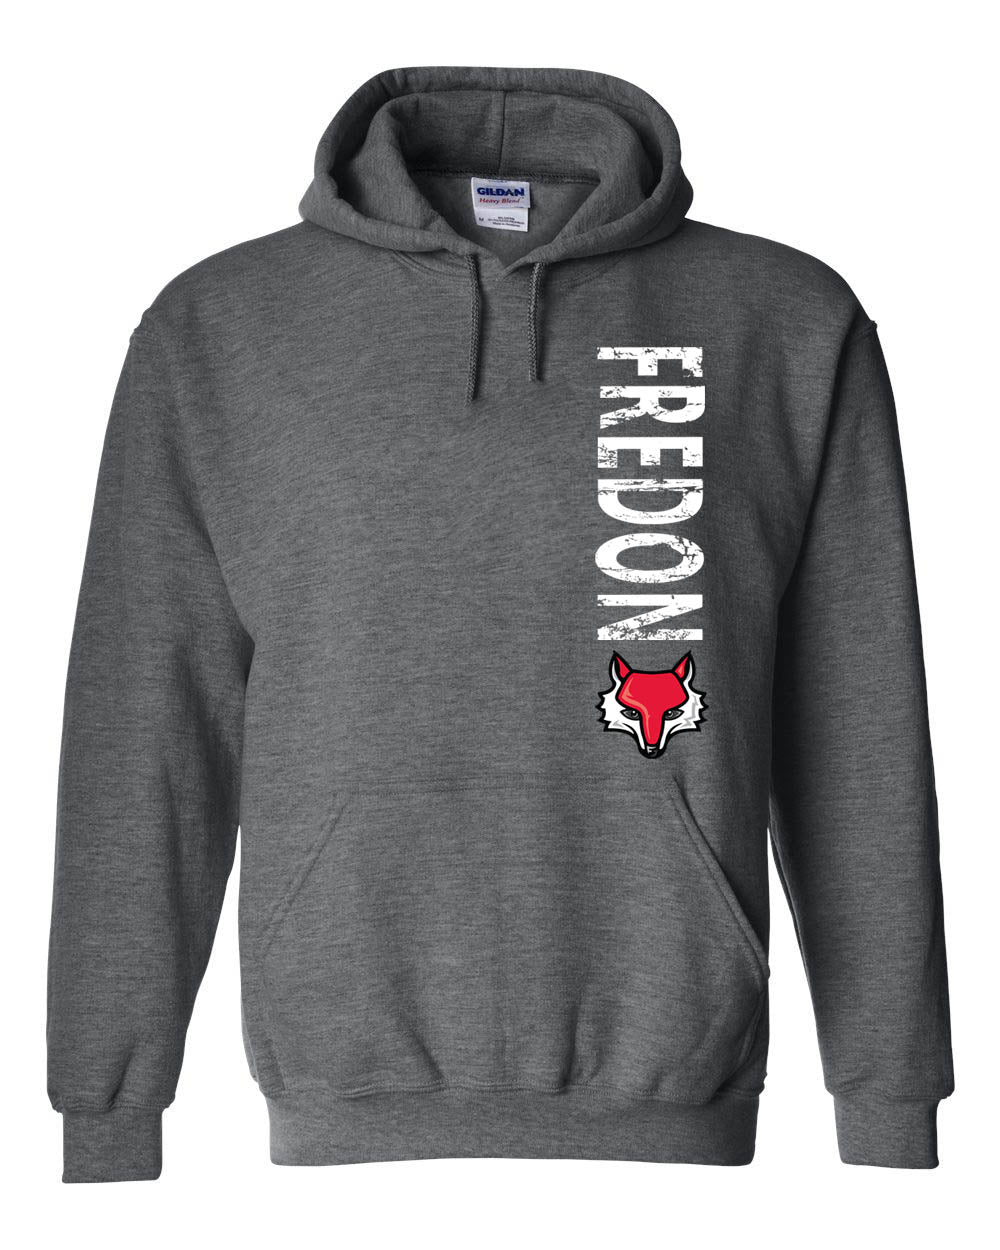 Fredon Design 4 Hooded Sweatshirt